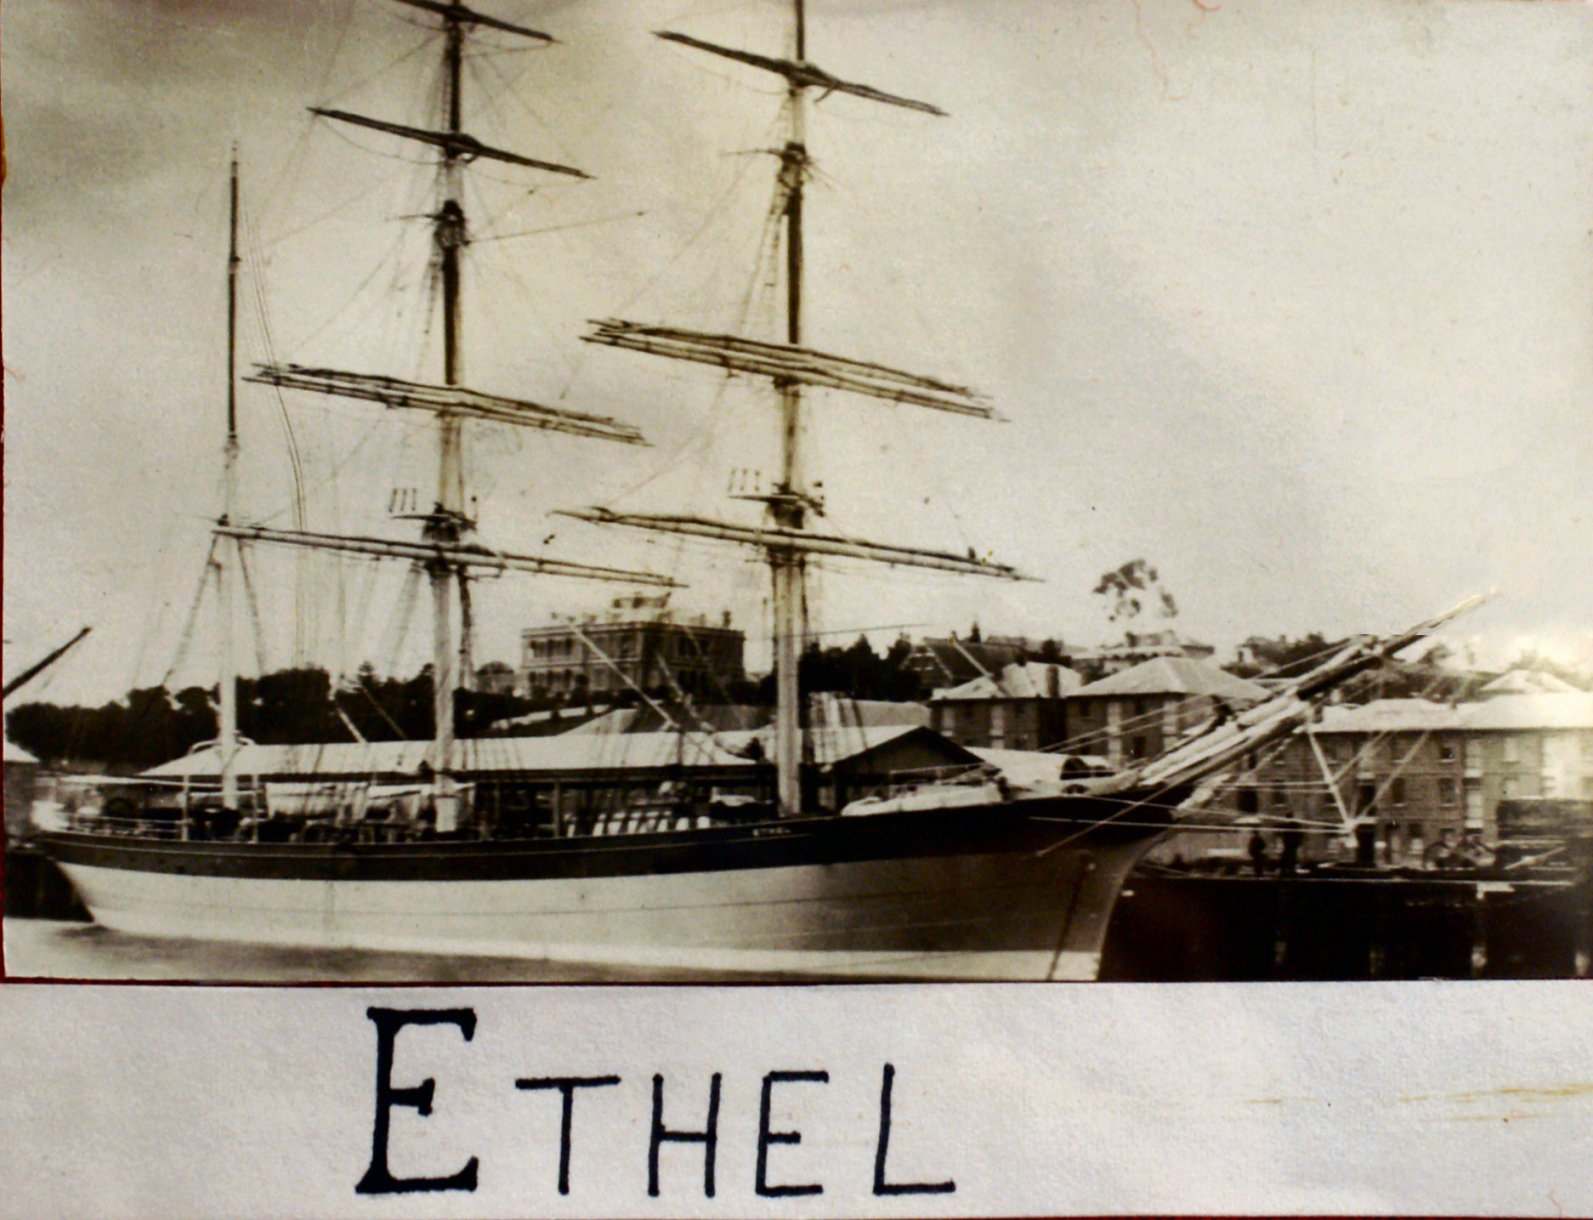 Image of ship Ethel